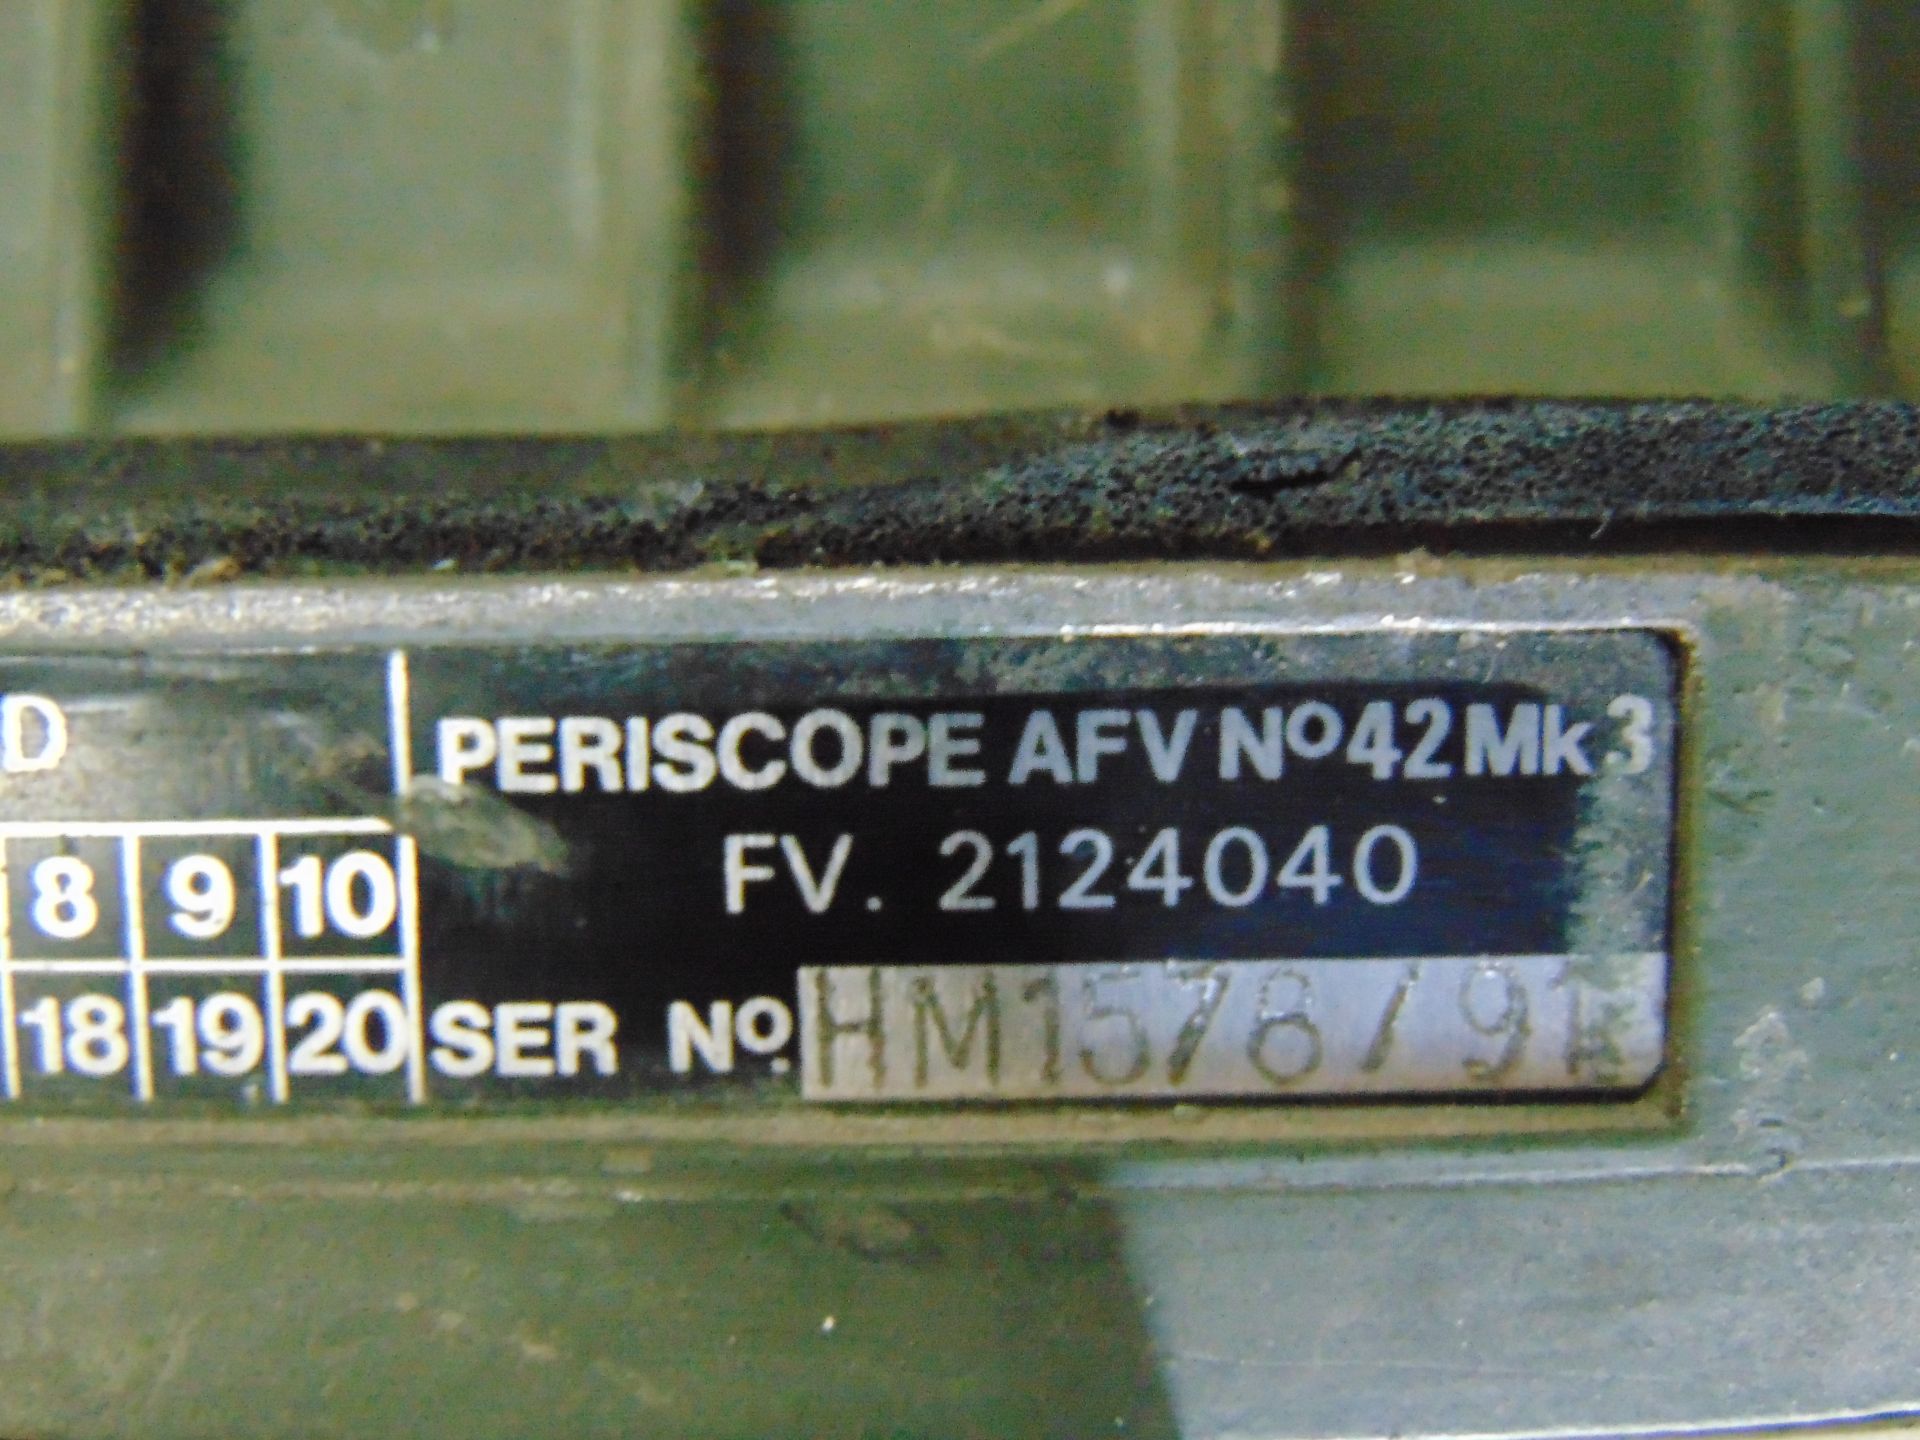 7 x AFV No 42 Mk3 Periscopes - Image 5 of 6